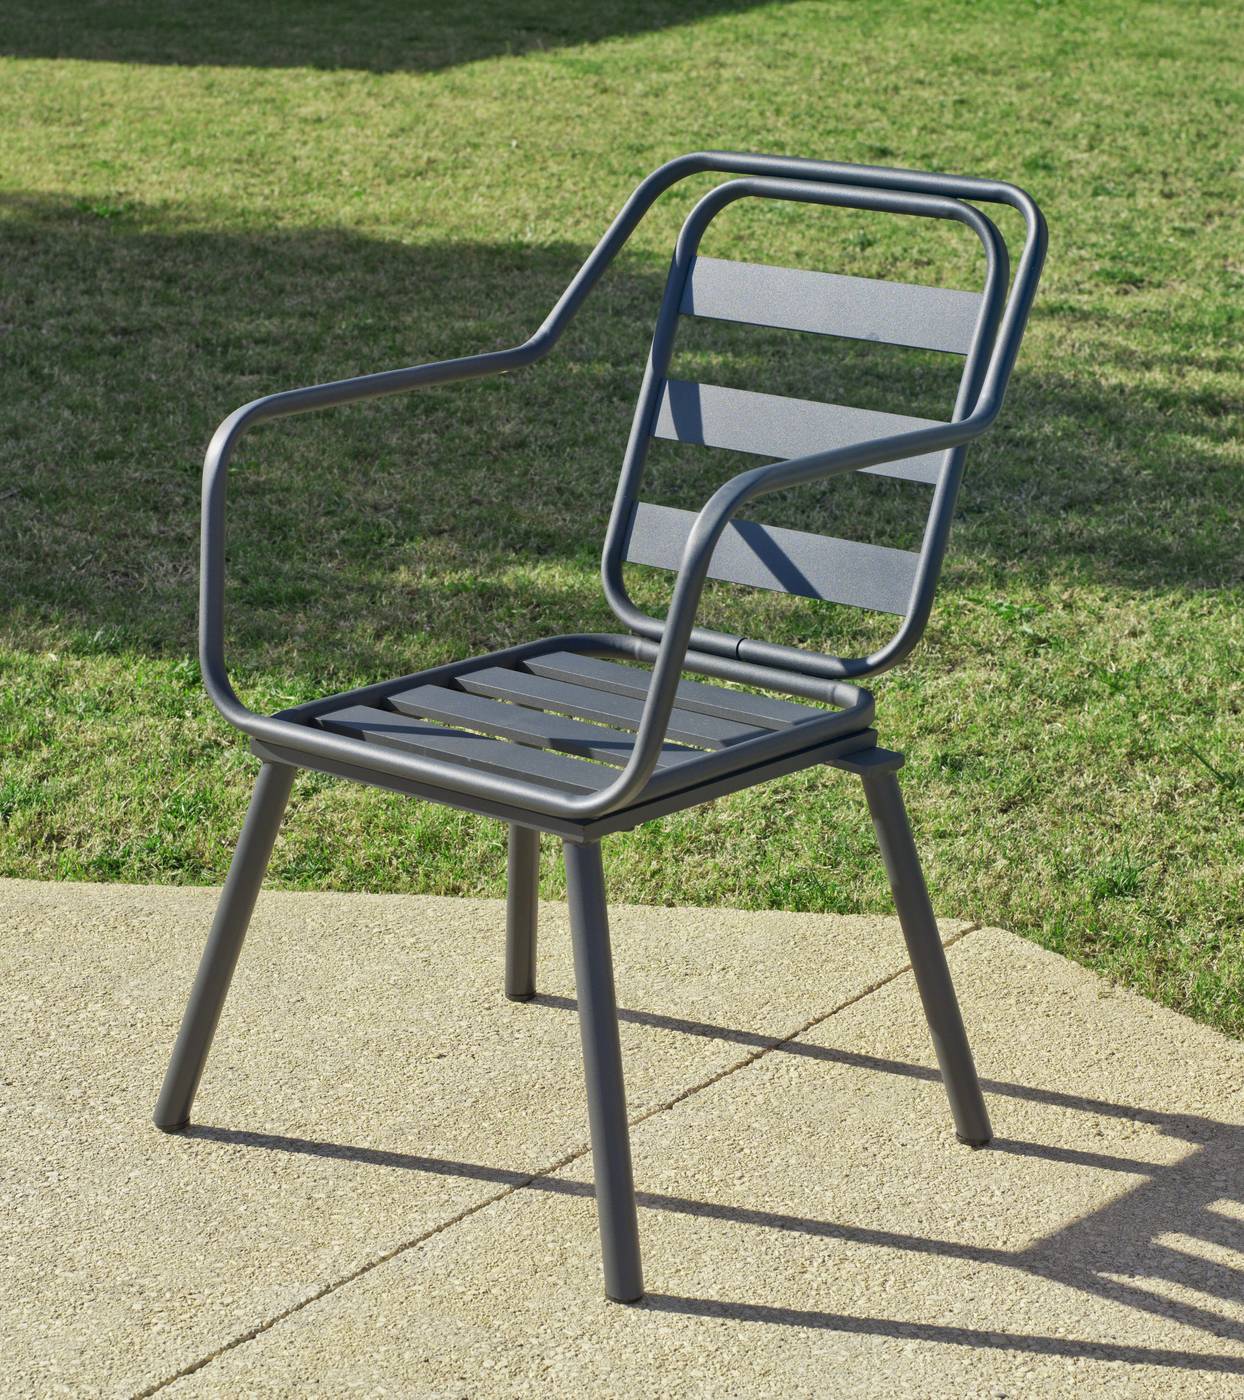 Set Aluminio Palma-Minerva 90-4 - Conjunto aluminio luxe: mesa cuadrada de 90 cm. + 4 sillones. Disponible en color blanco y color antracita.